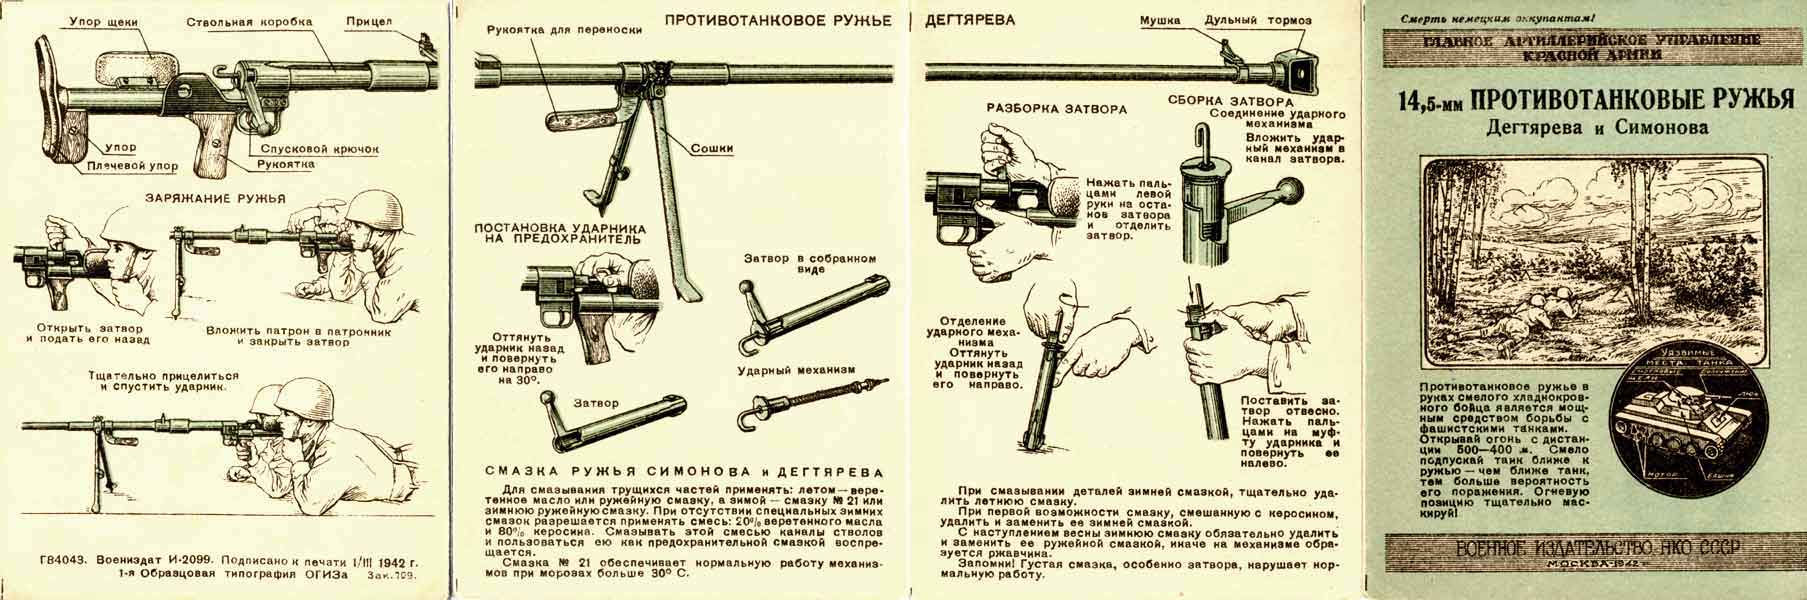 Противотанковое ружье рукавишникова образца 1939 года